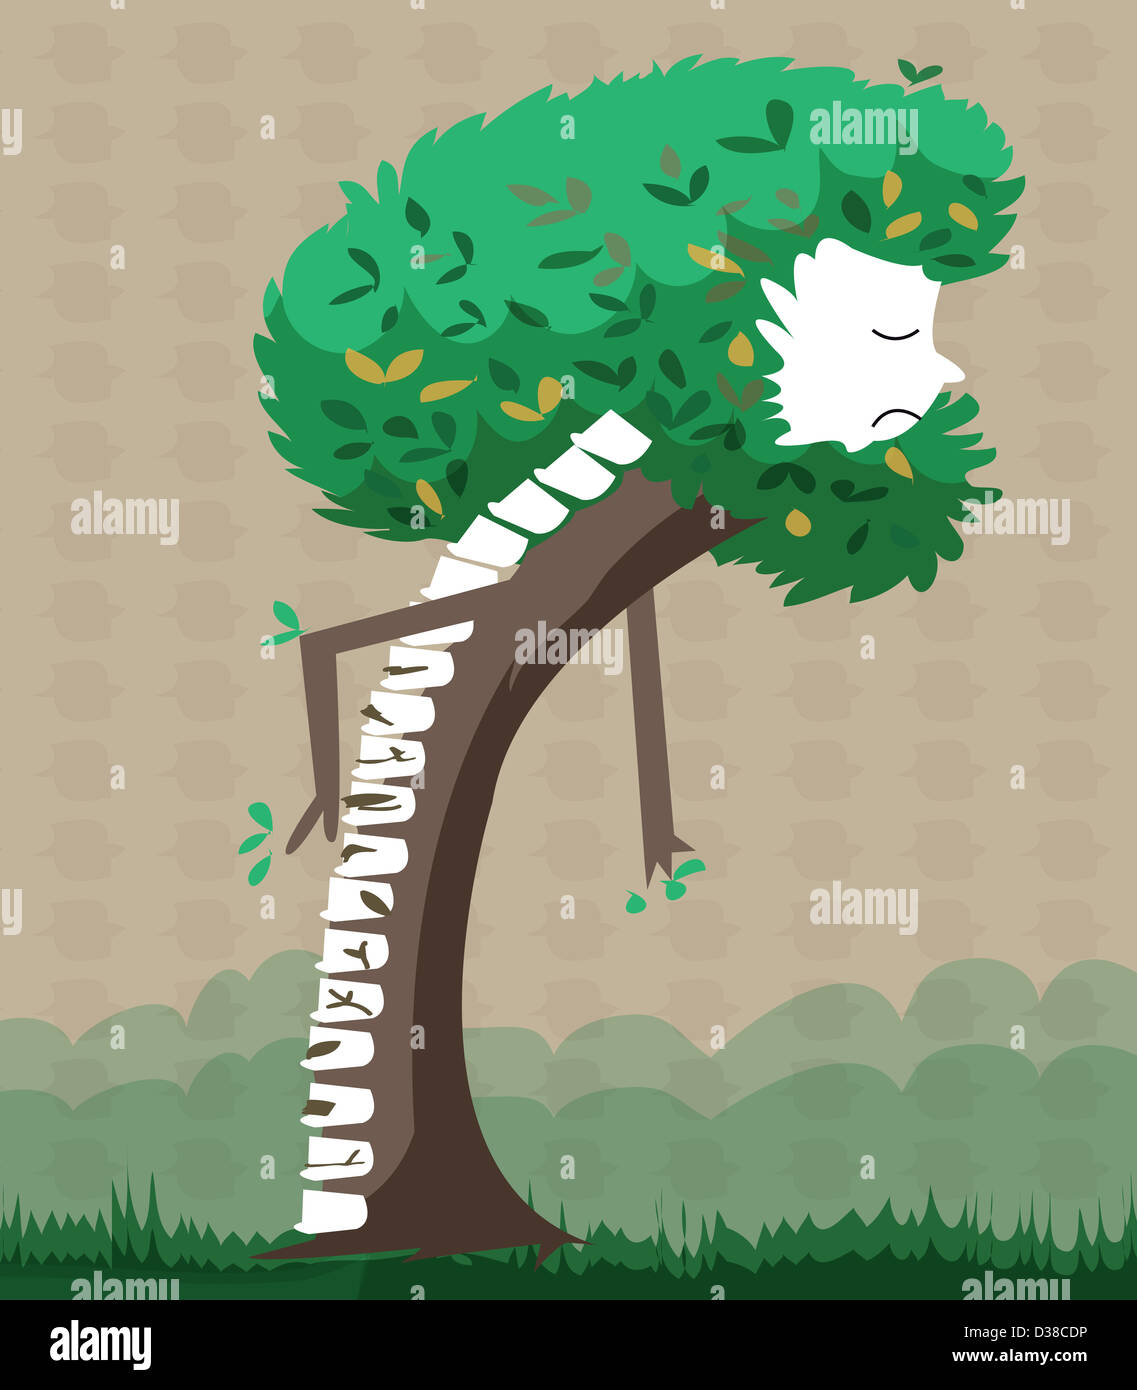 Image d'illustration de l'arbre représente la colonne vertébrale des personnes âgées Banque D'Images